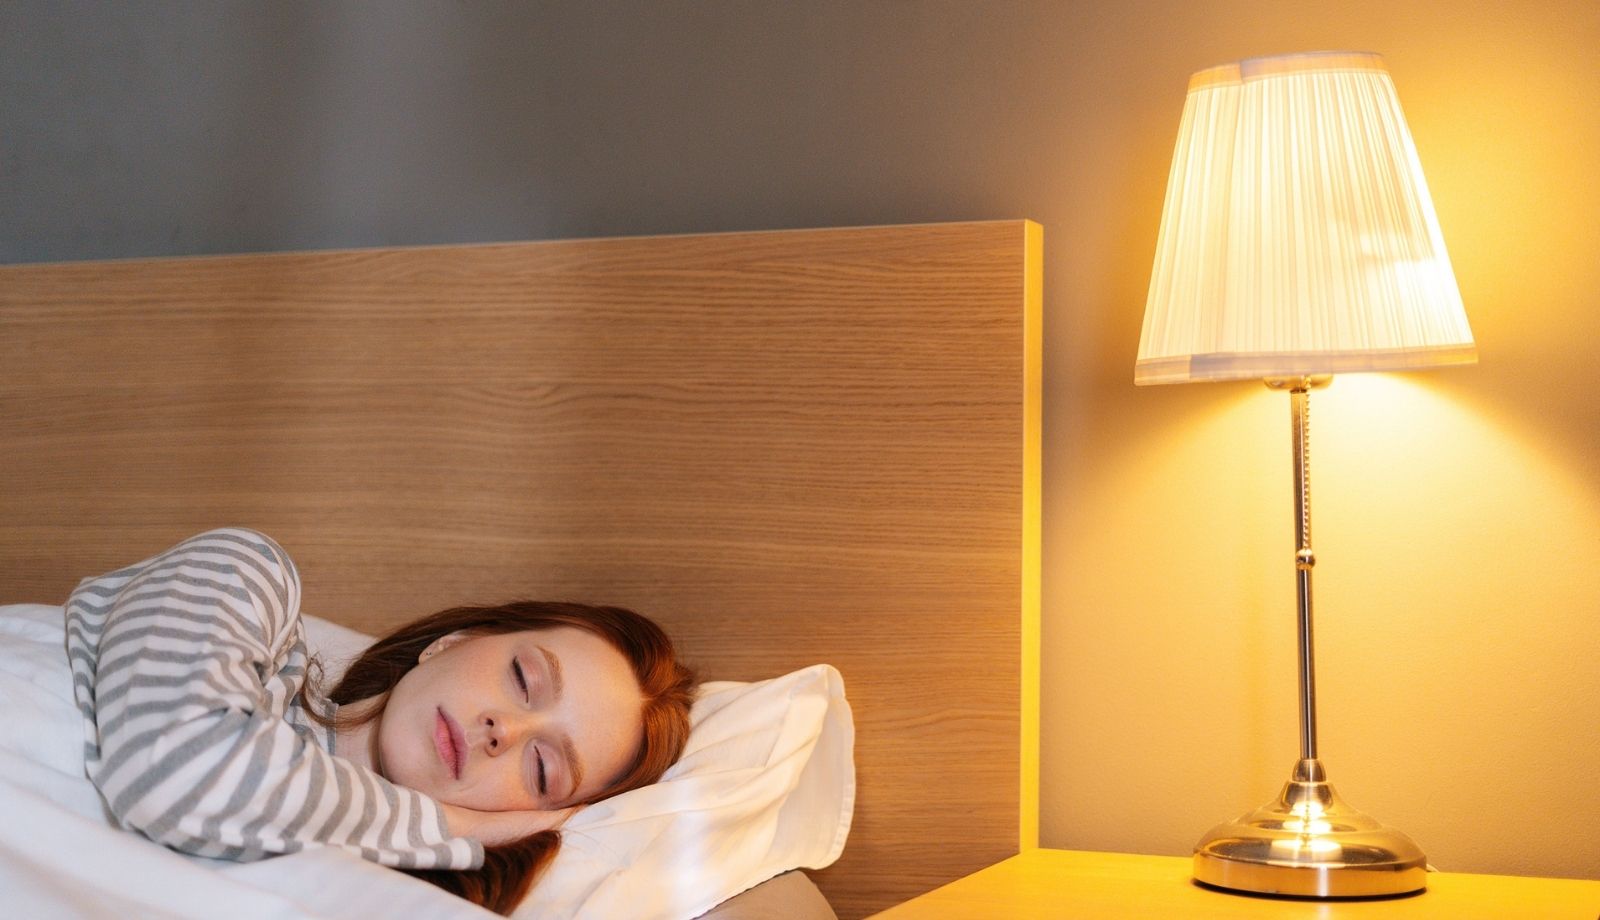 10 Sleep tips for a consistent sleep